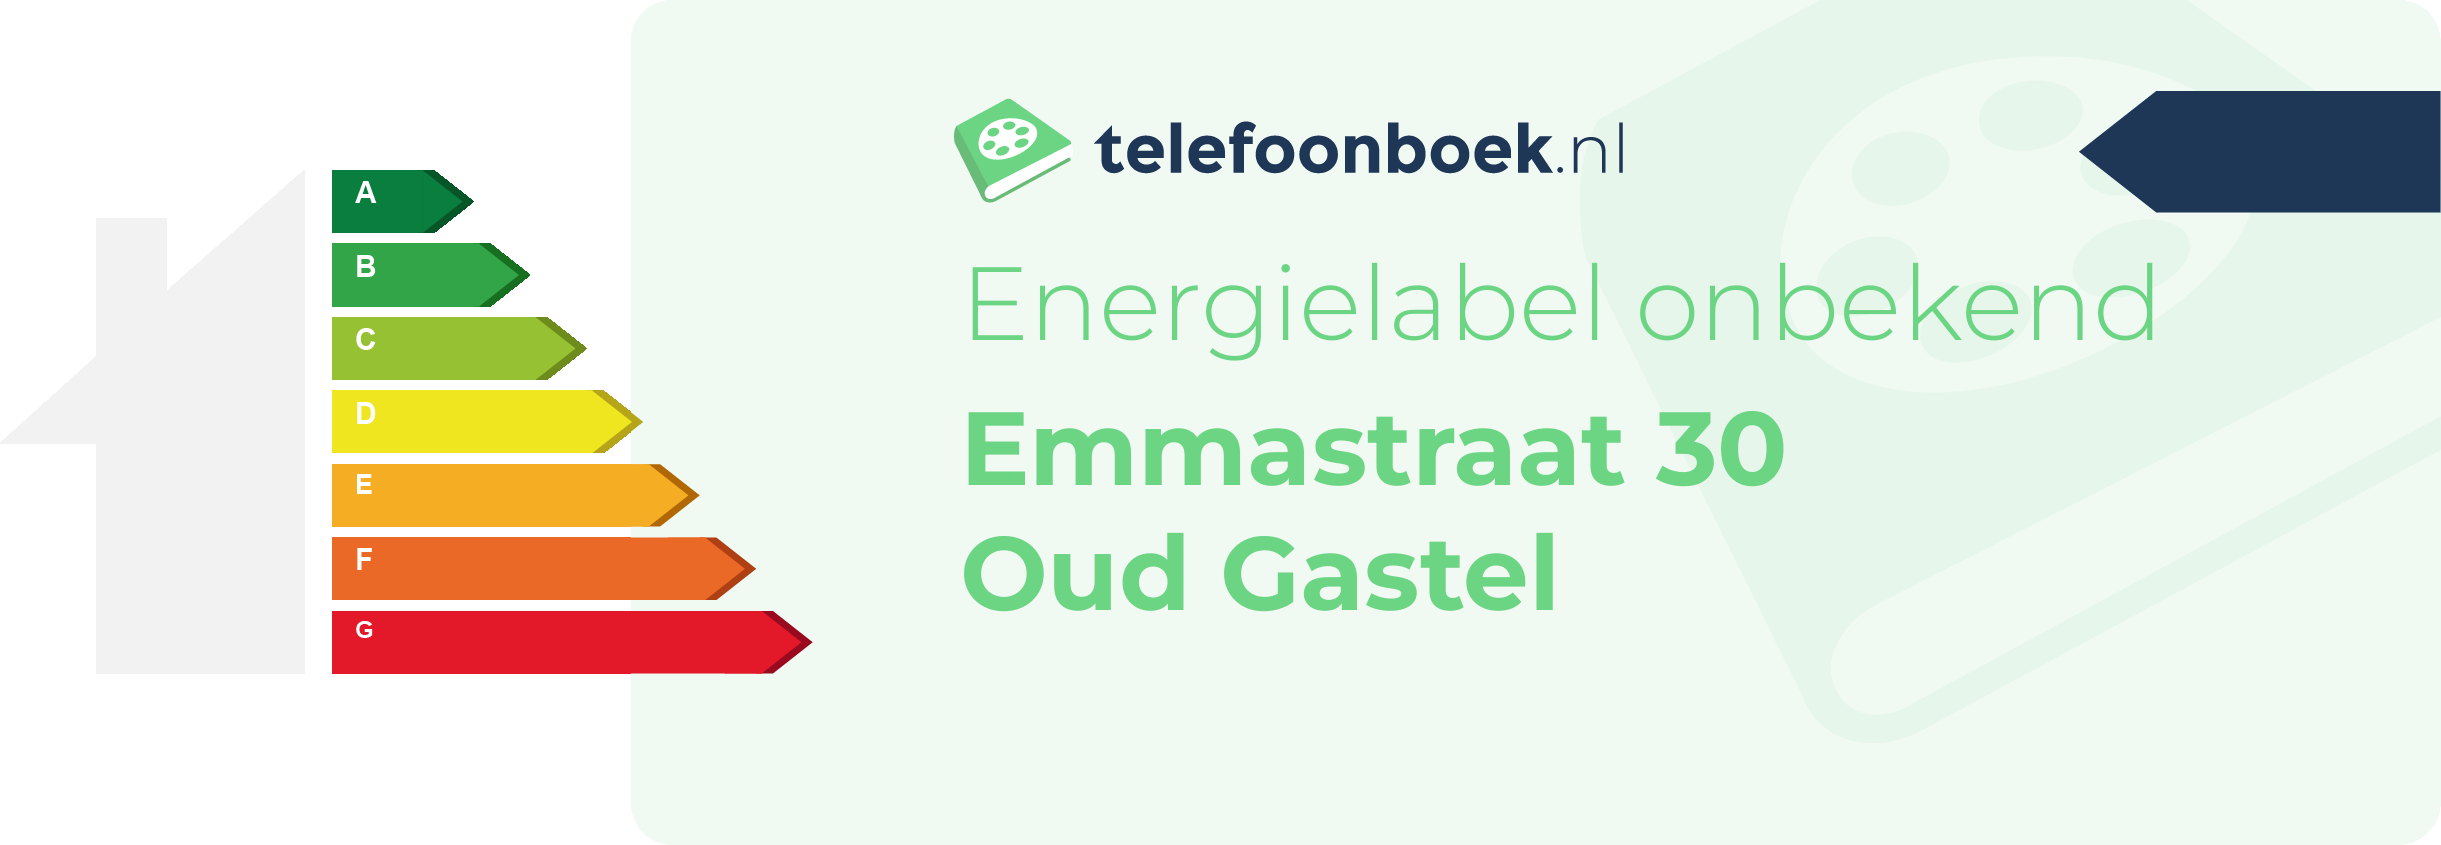 Energielabel Emmastraat 30 Oud Gastel